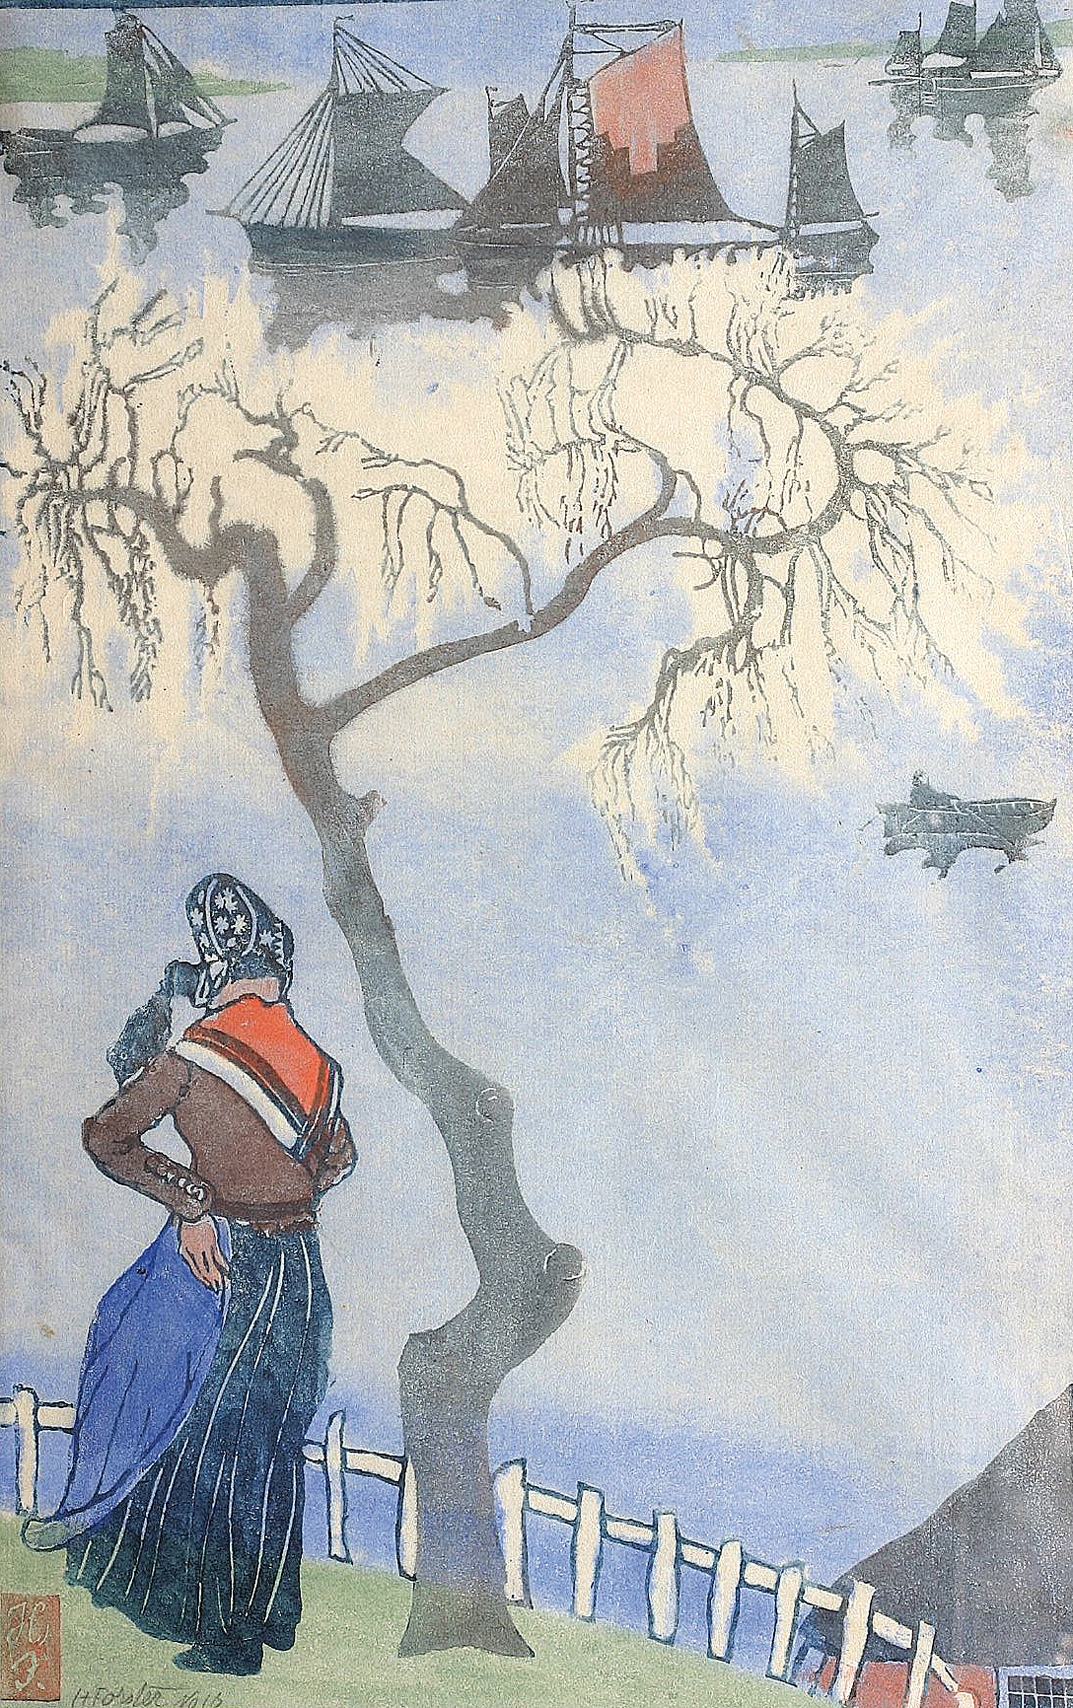 Motiv vom 'Alten Land' mit Bäuerin, Booten und blühendem Baum